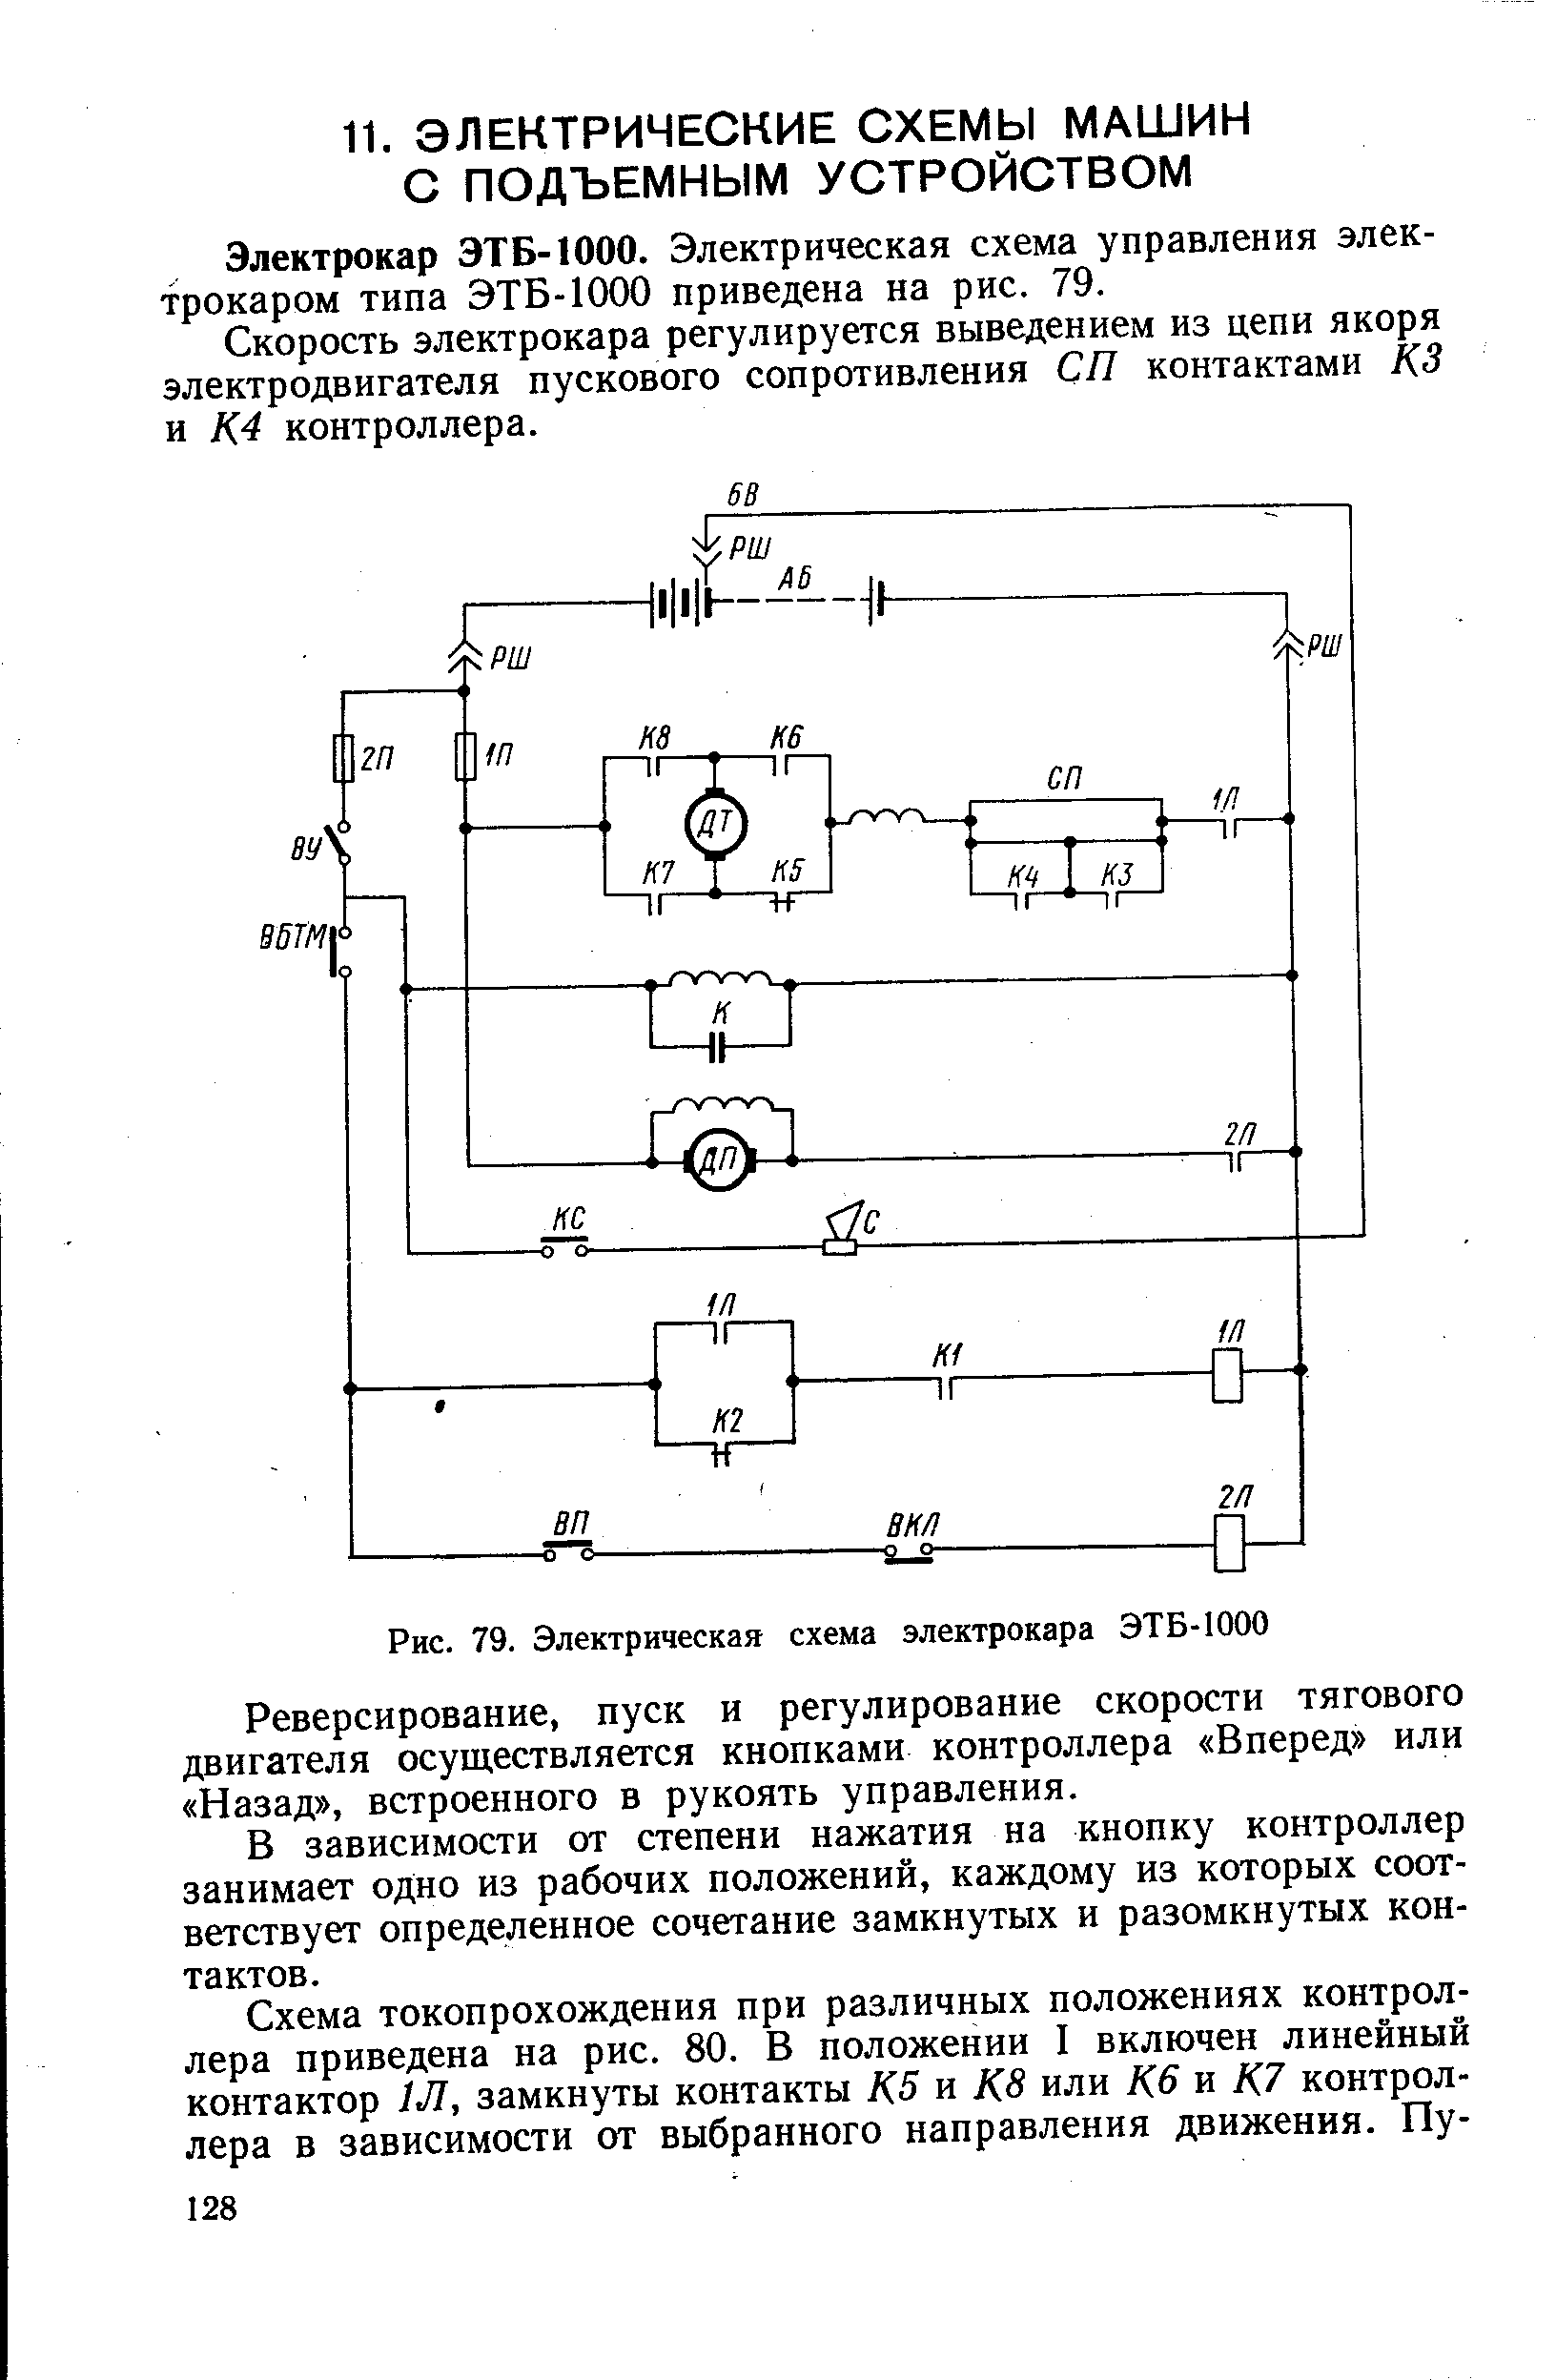 электрическая схема Электрокара